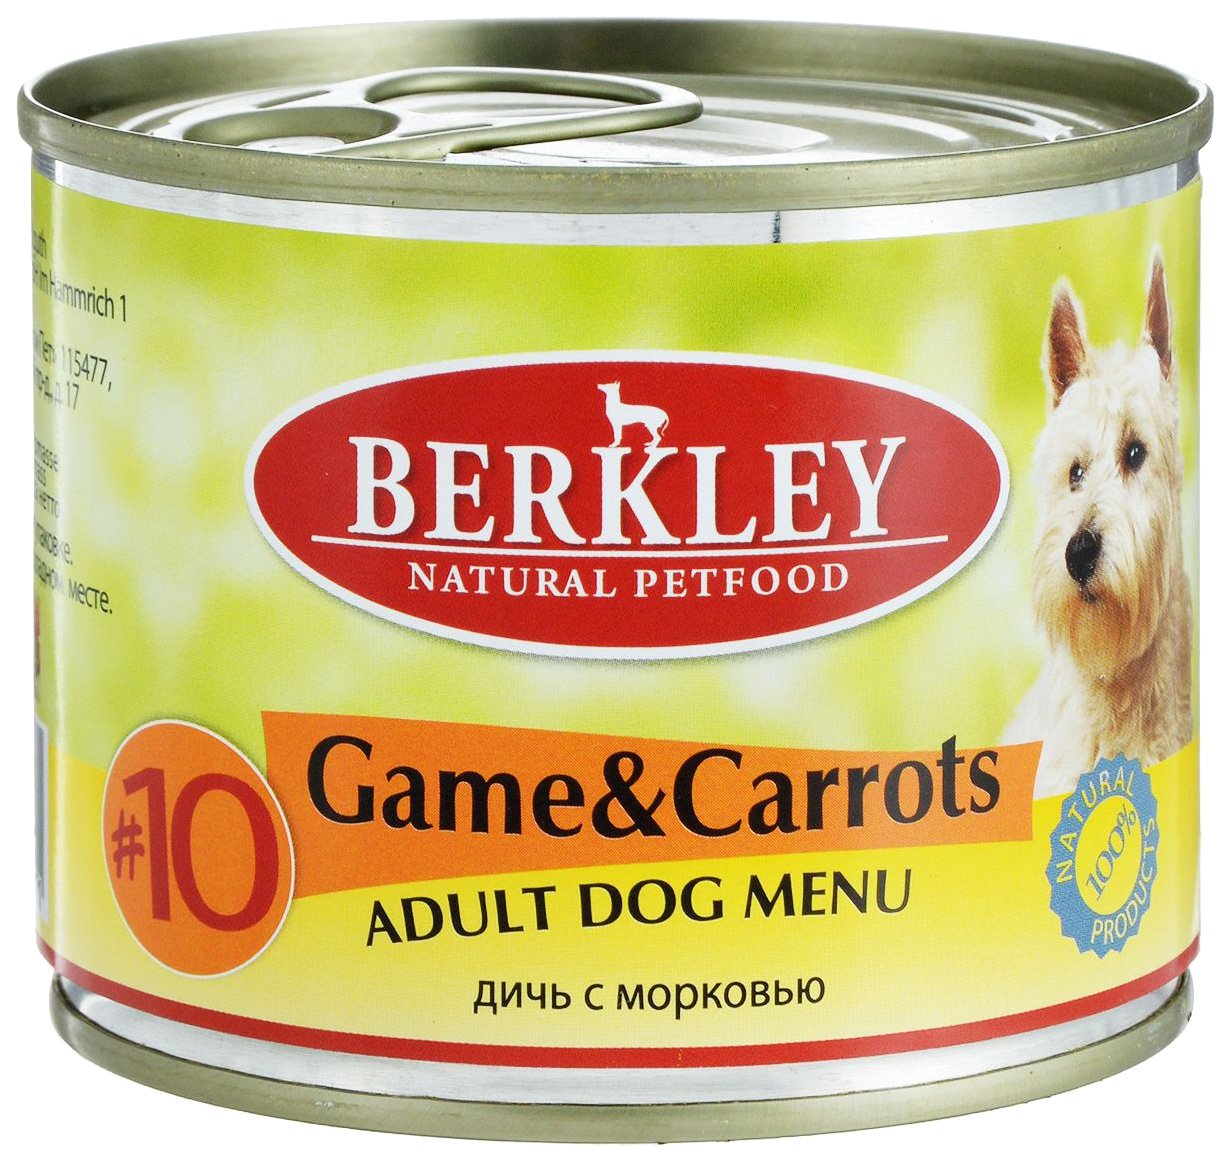 Консервы Беркли 200г для собак №10 дичь с морковью